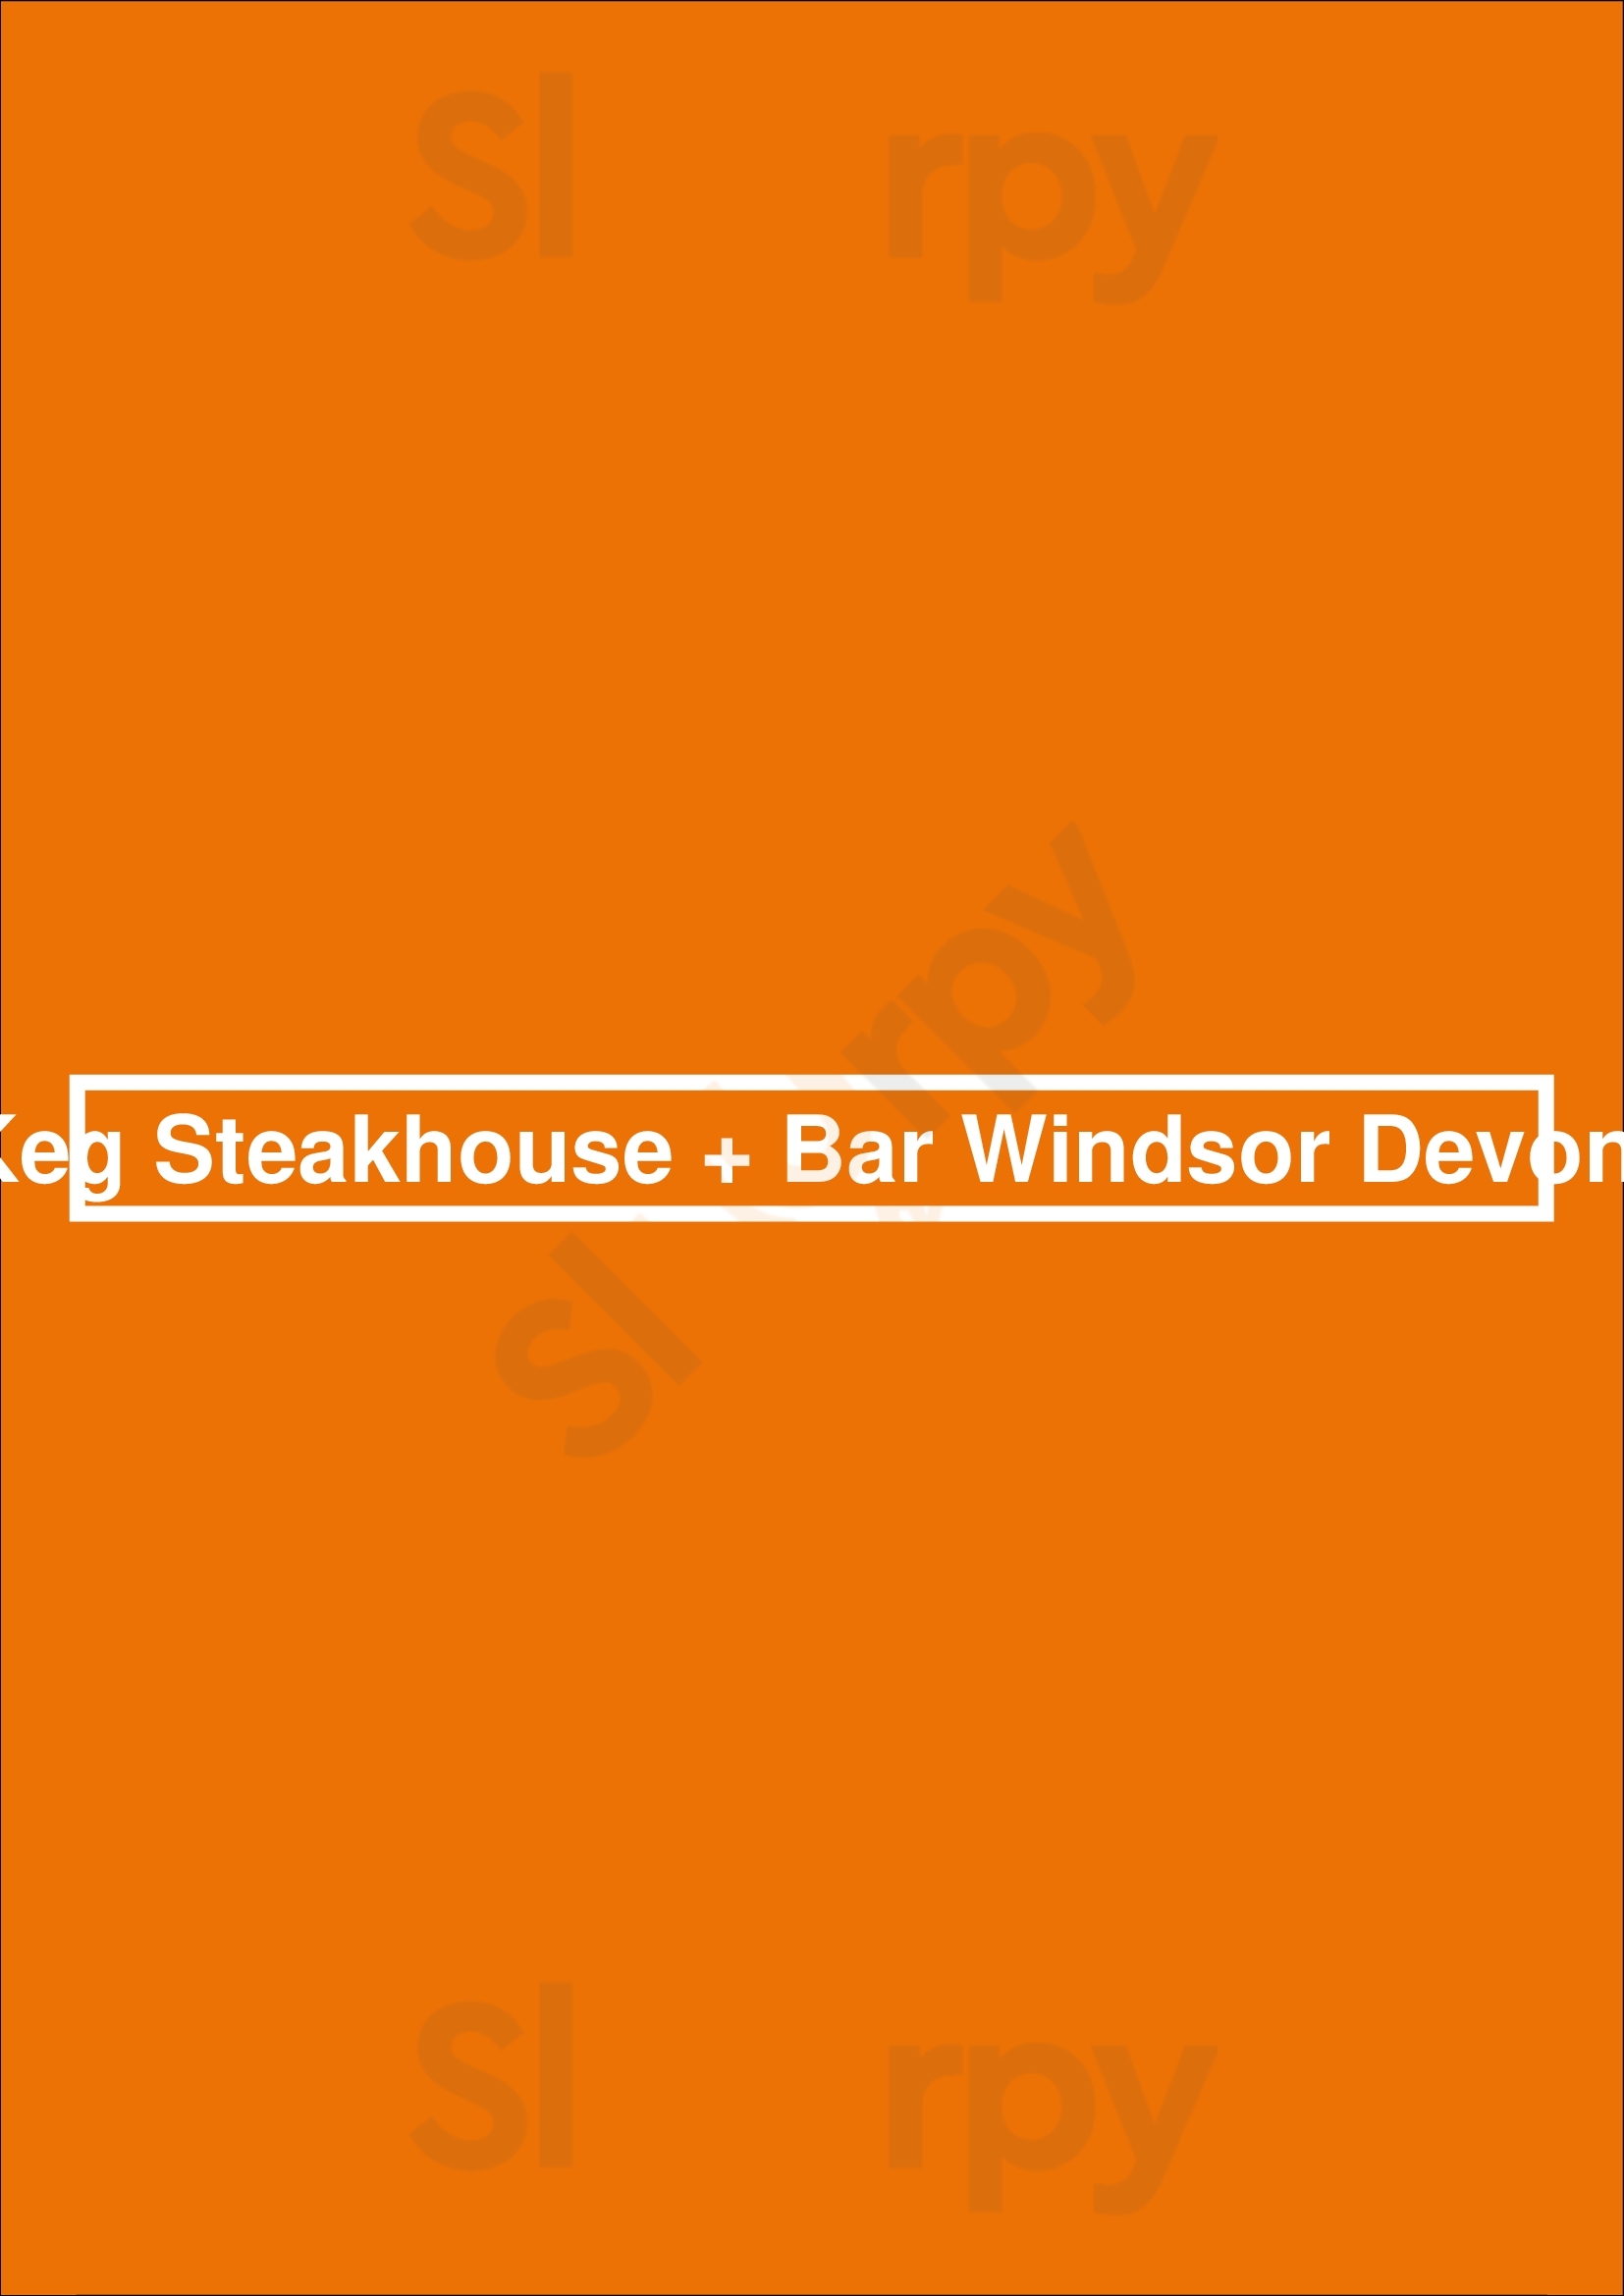 The Keg Steakhouse + Bar - Windsor Devonshire Windsor Menu - 1